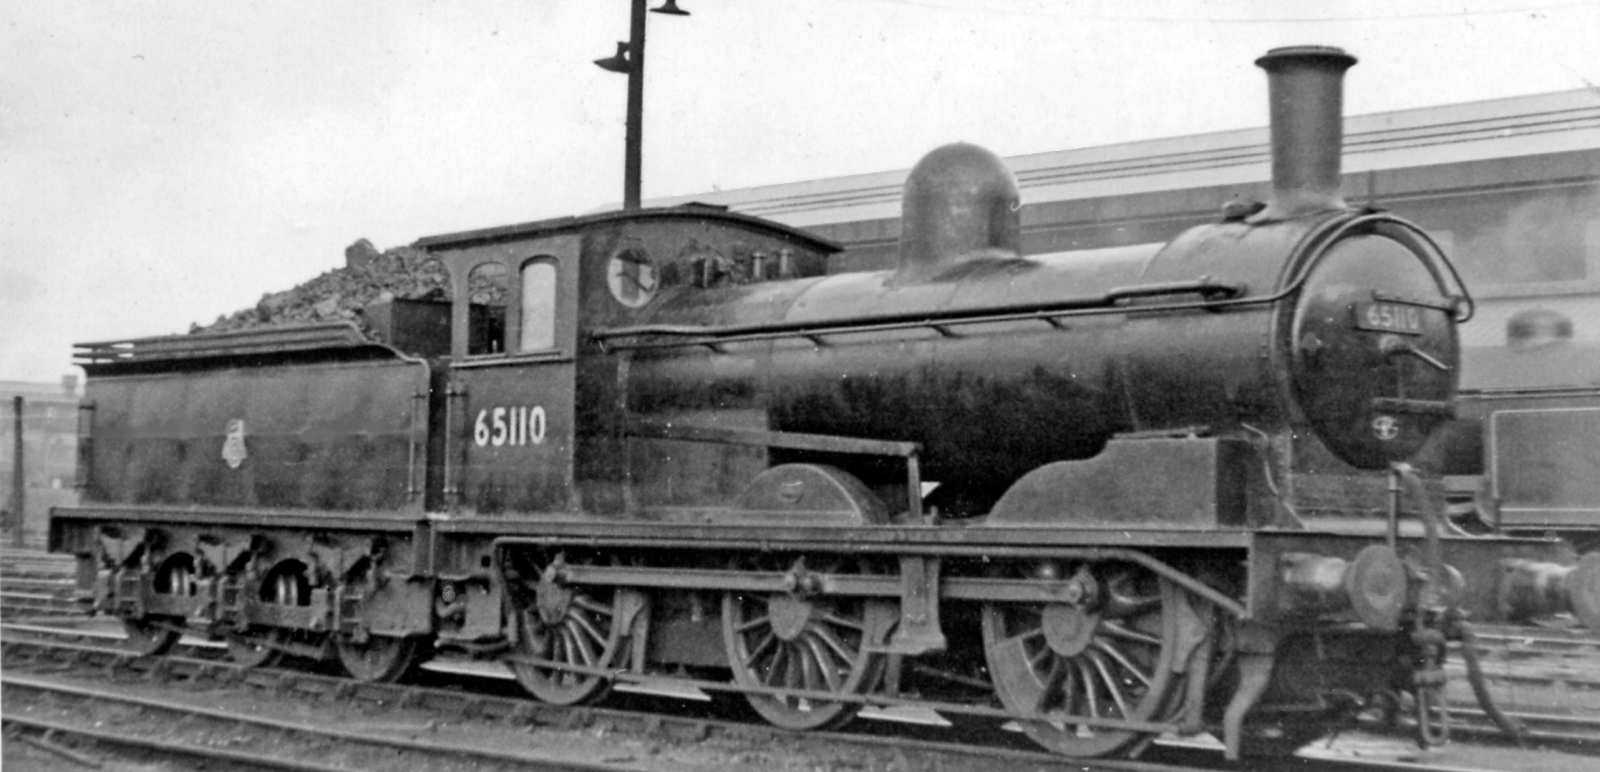 LNER J21 No. 65110 in June 1954 at Heaton Depot